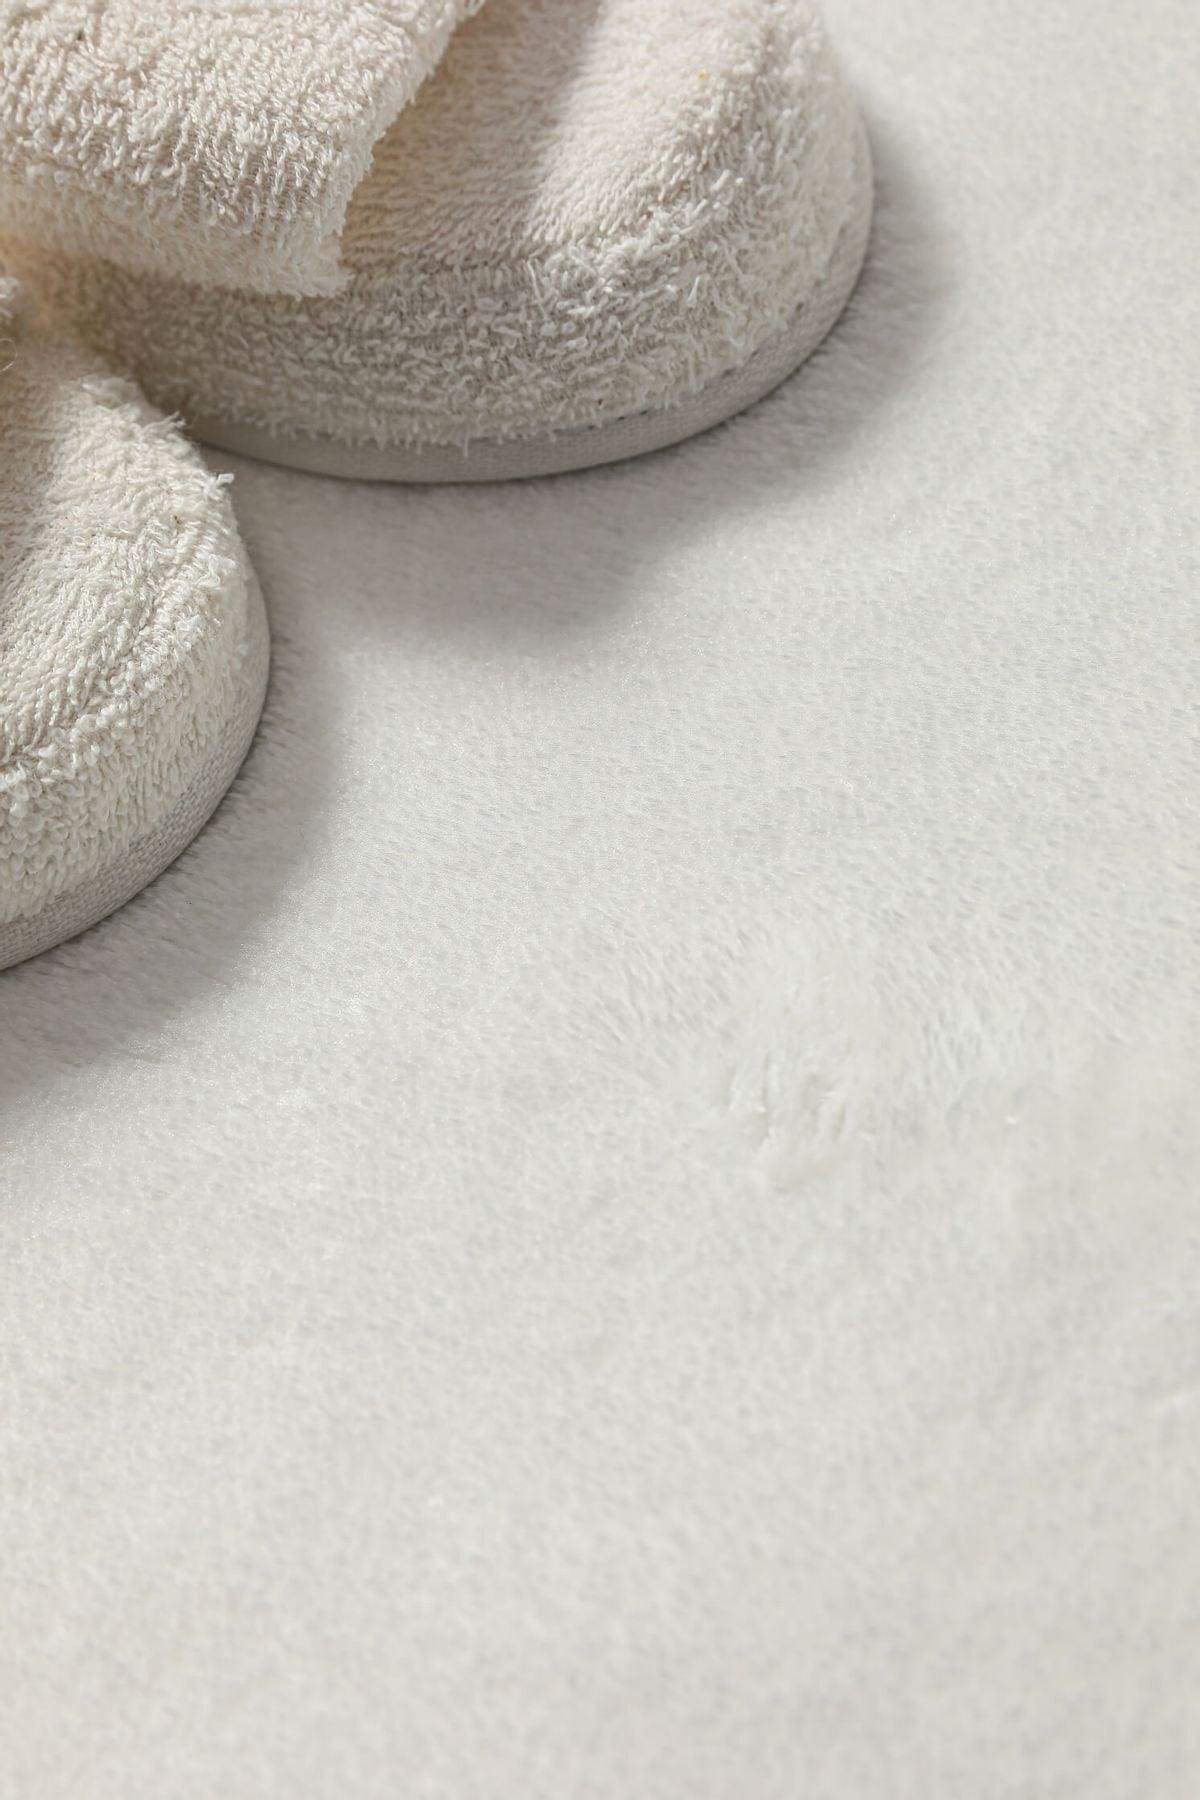 Tasseled Plush Non-Slip Floor Mat Set of 2 - White - Swordslife